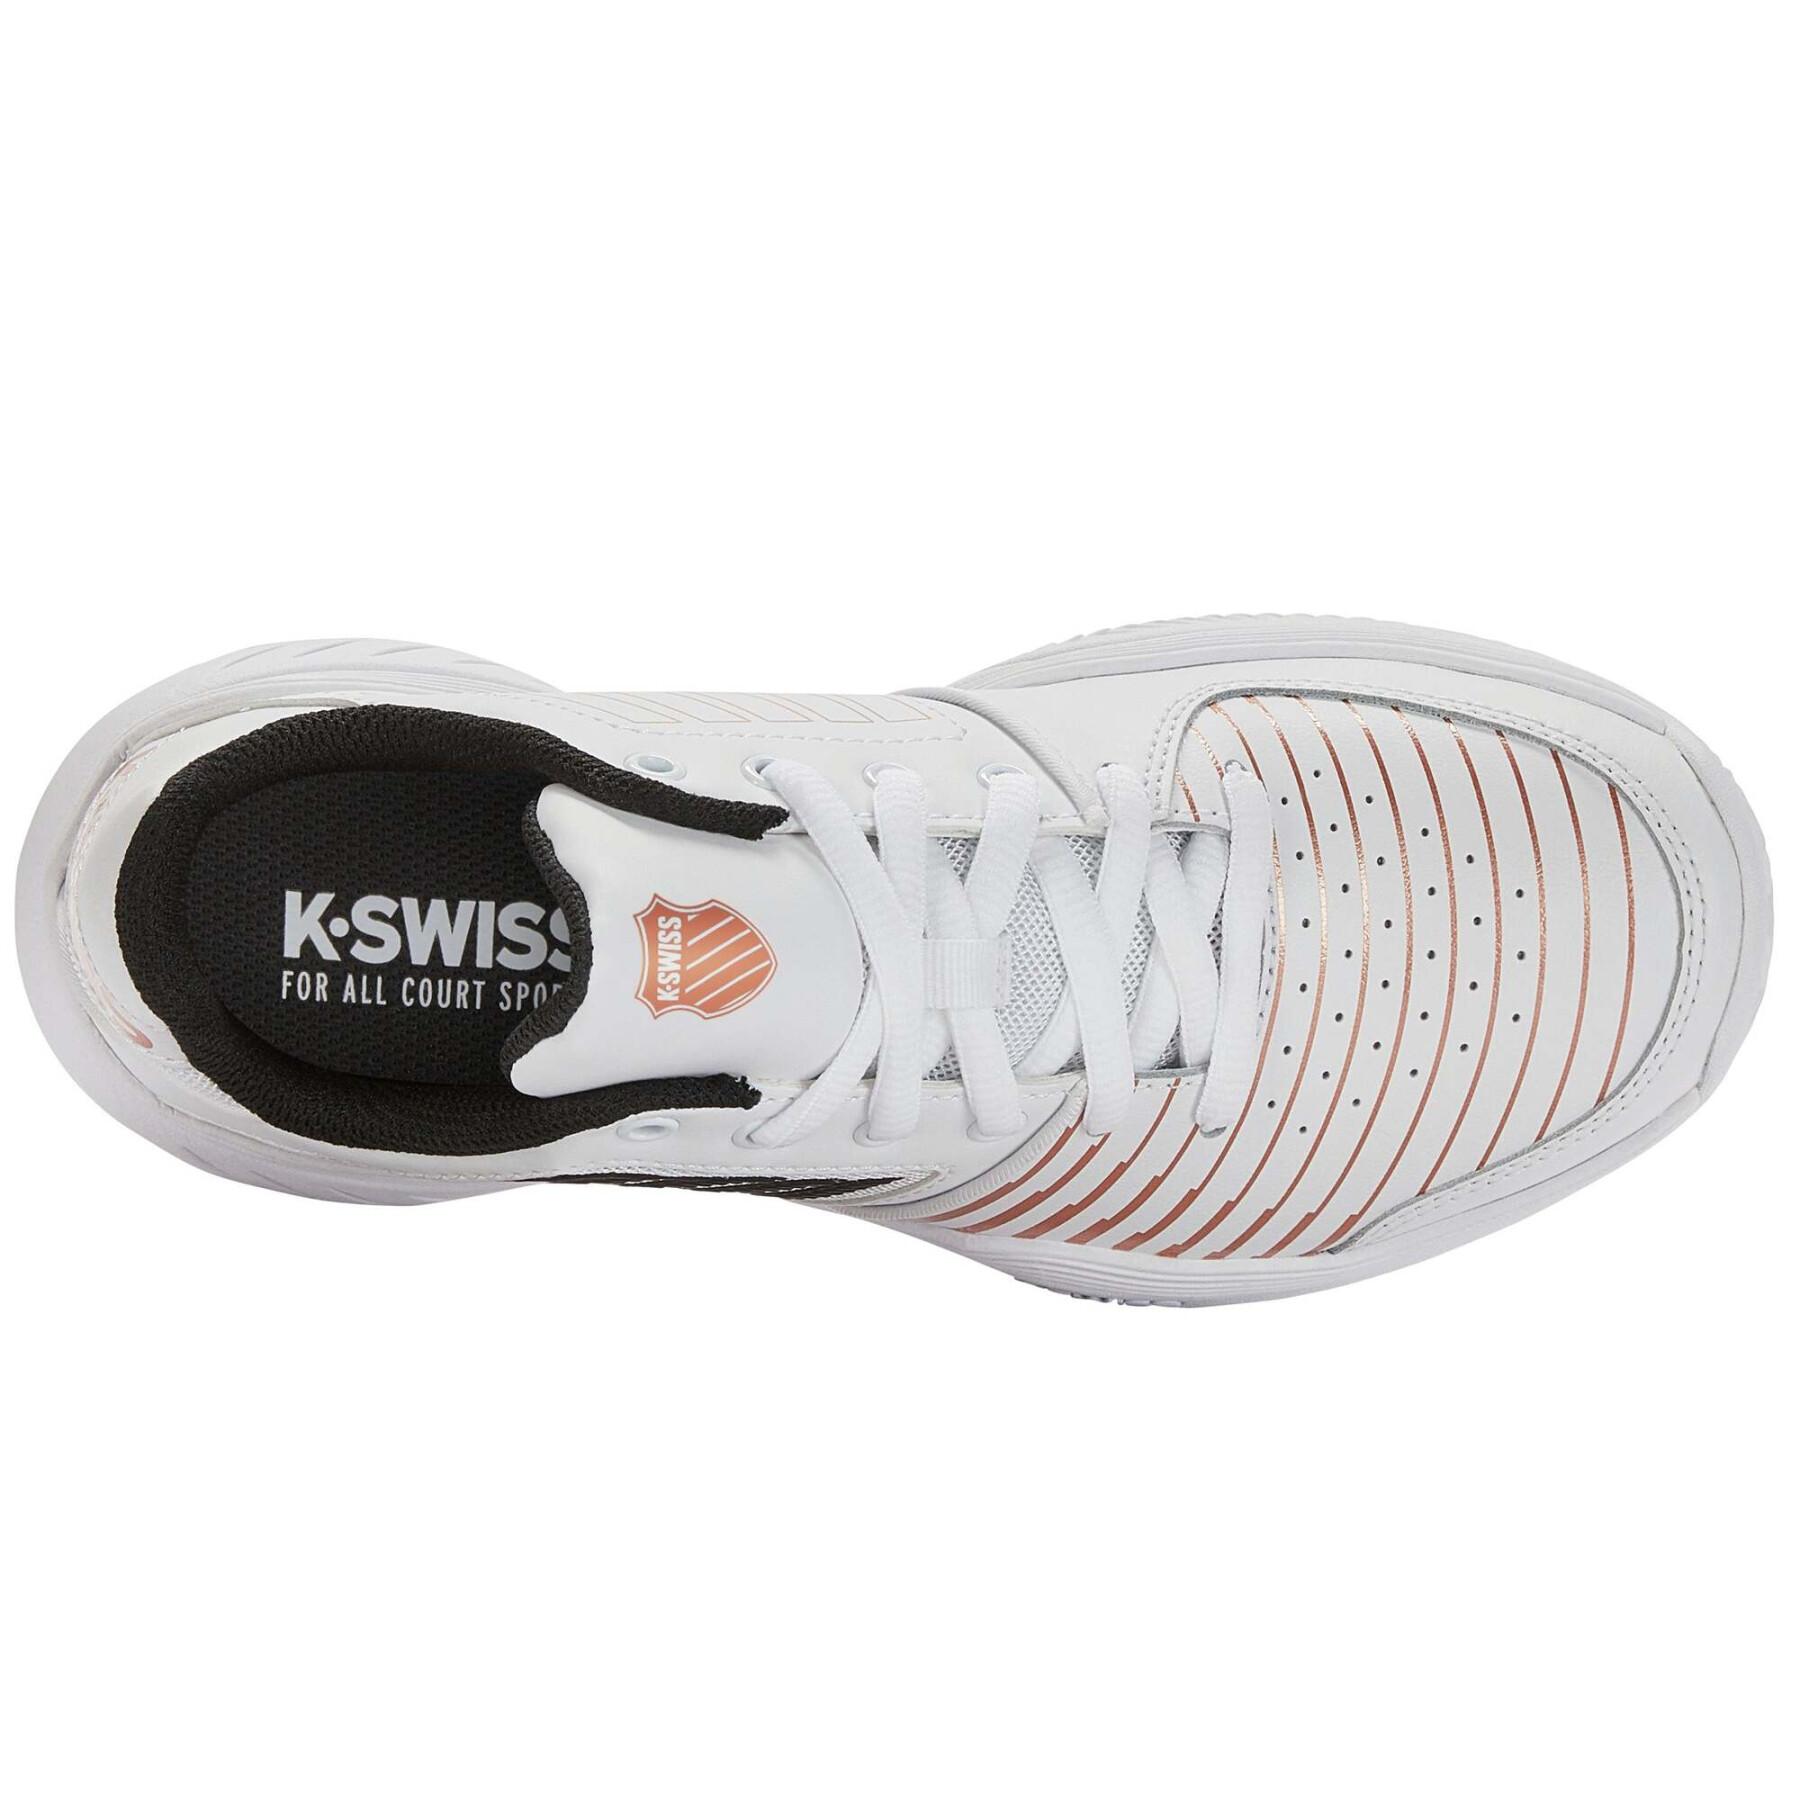 Chaussures de tennis femme K-Swiss Court Express Hb